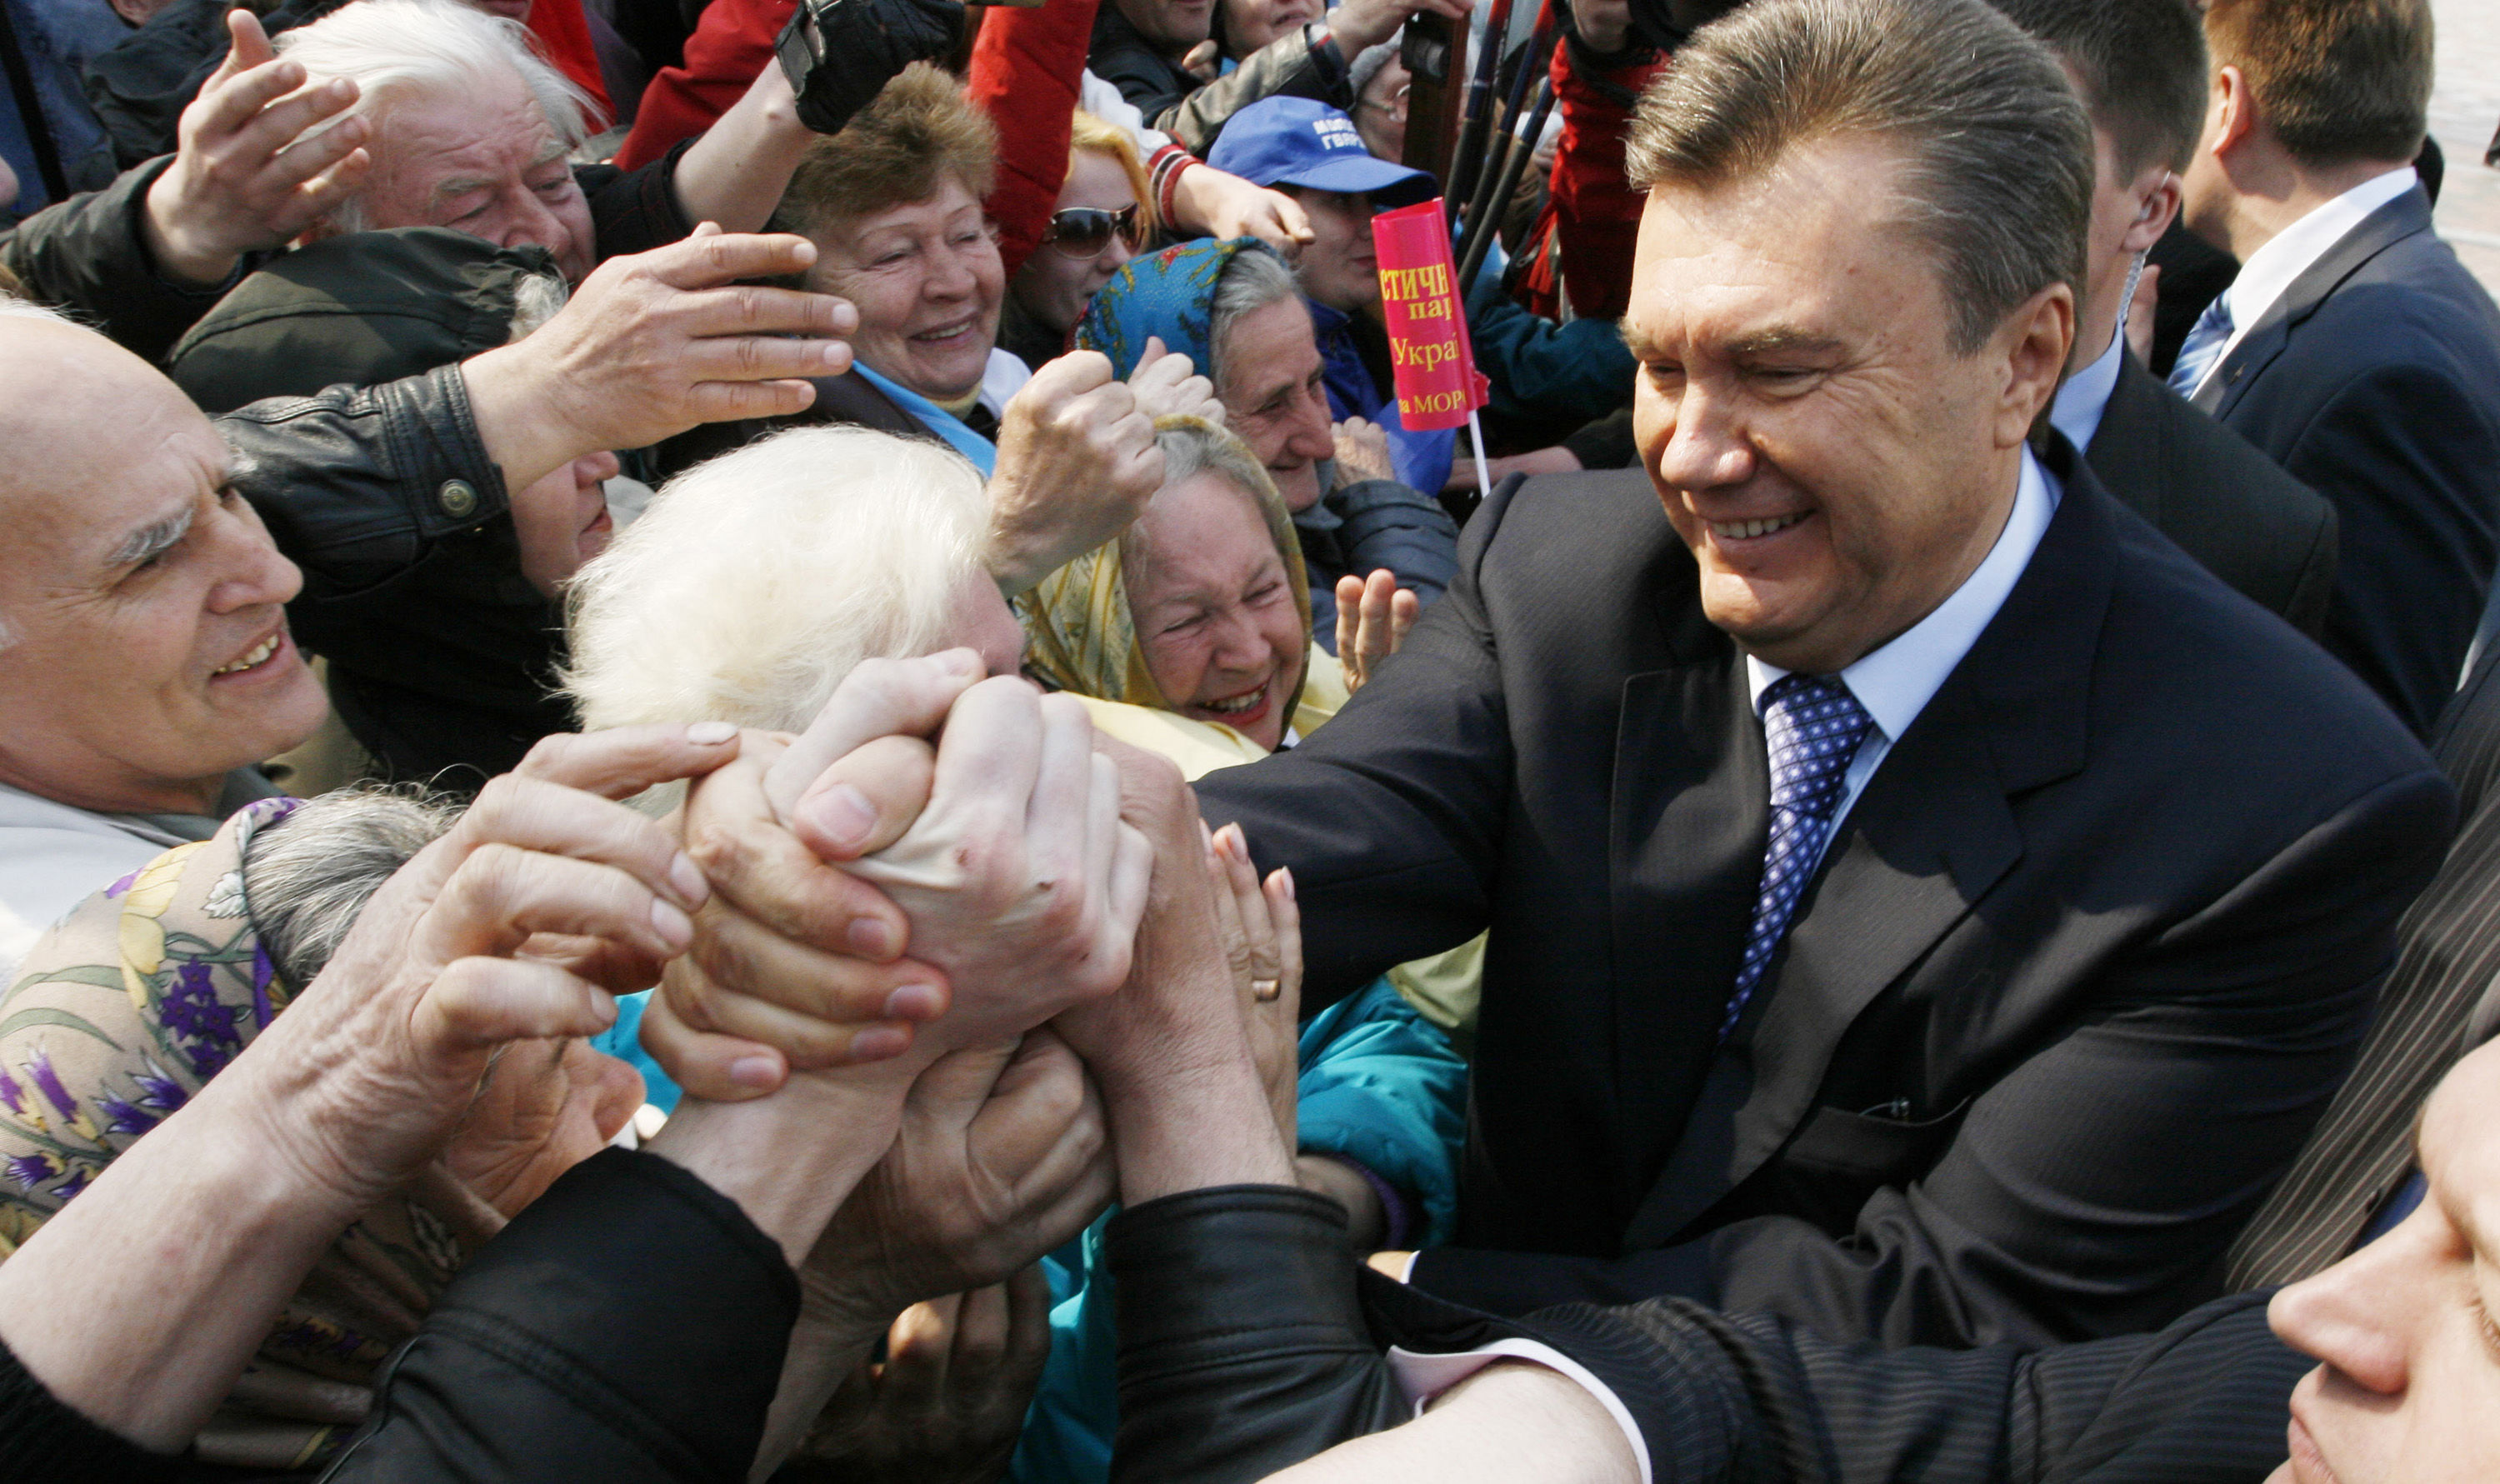 Талант возрождаться и неумение остановиться: Виктору Януковичу 70 лет